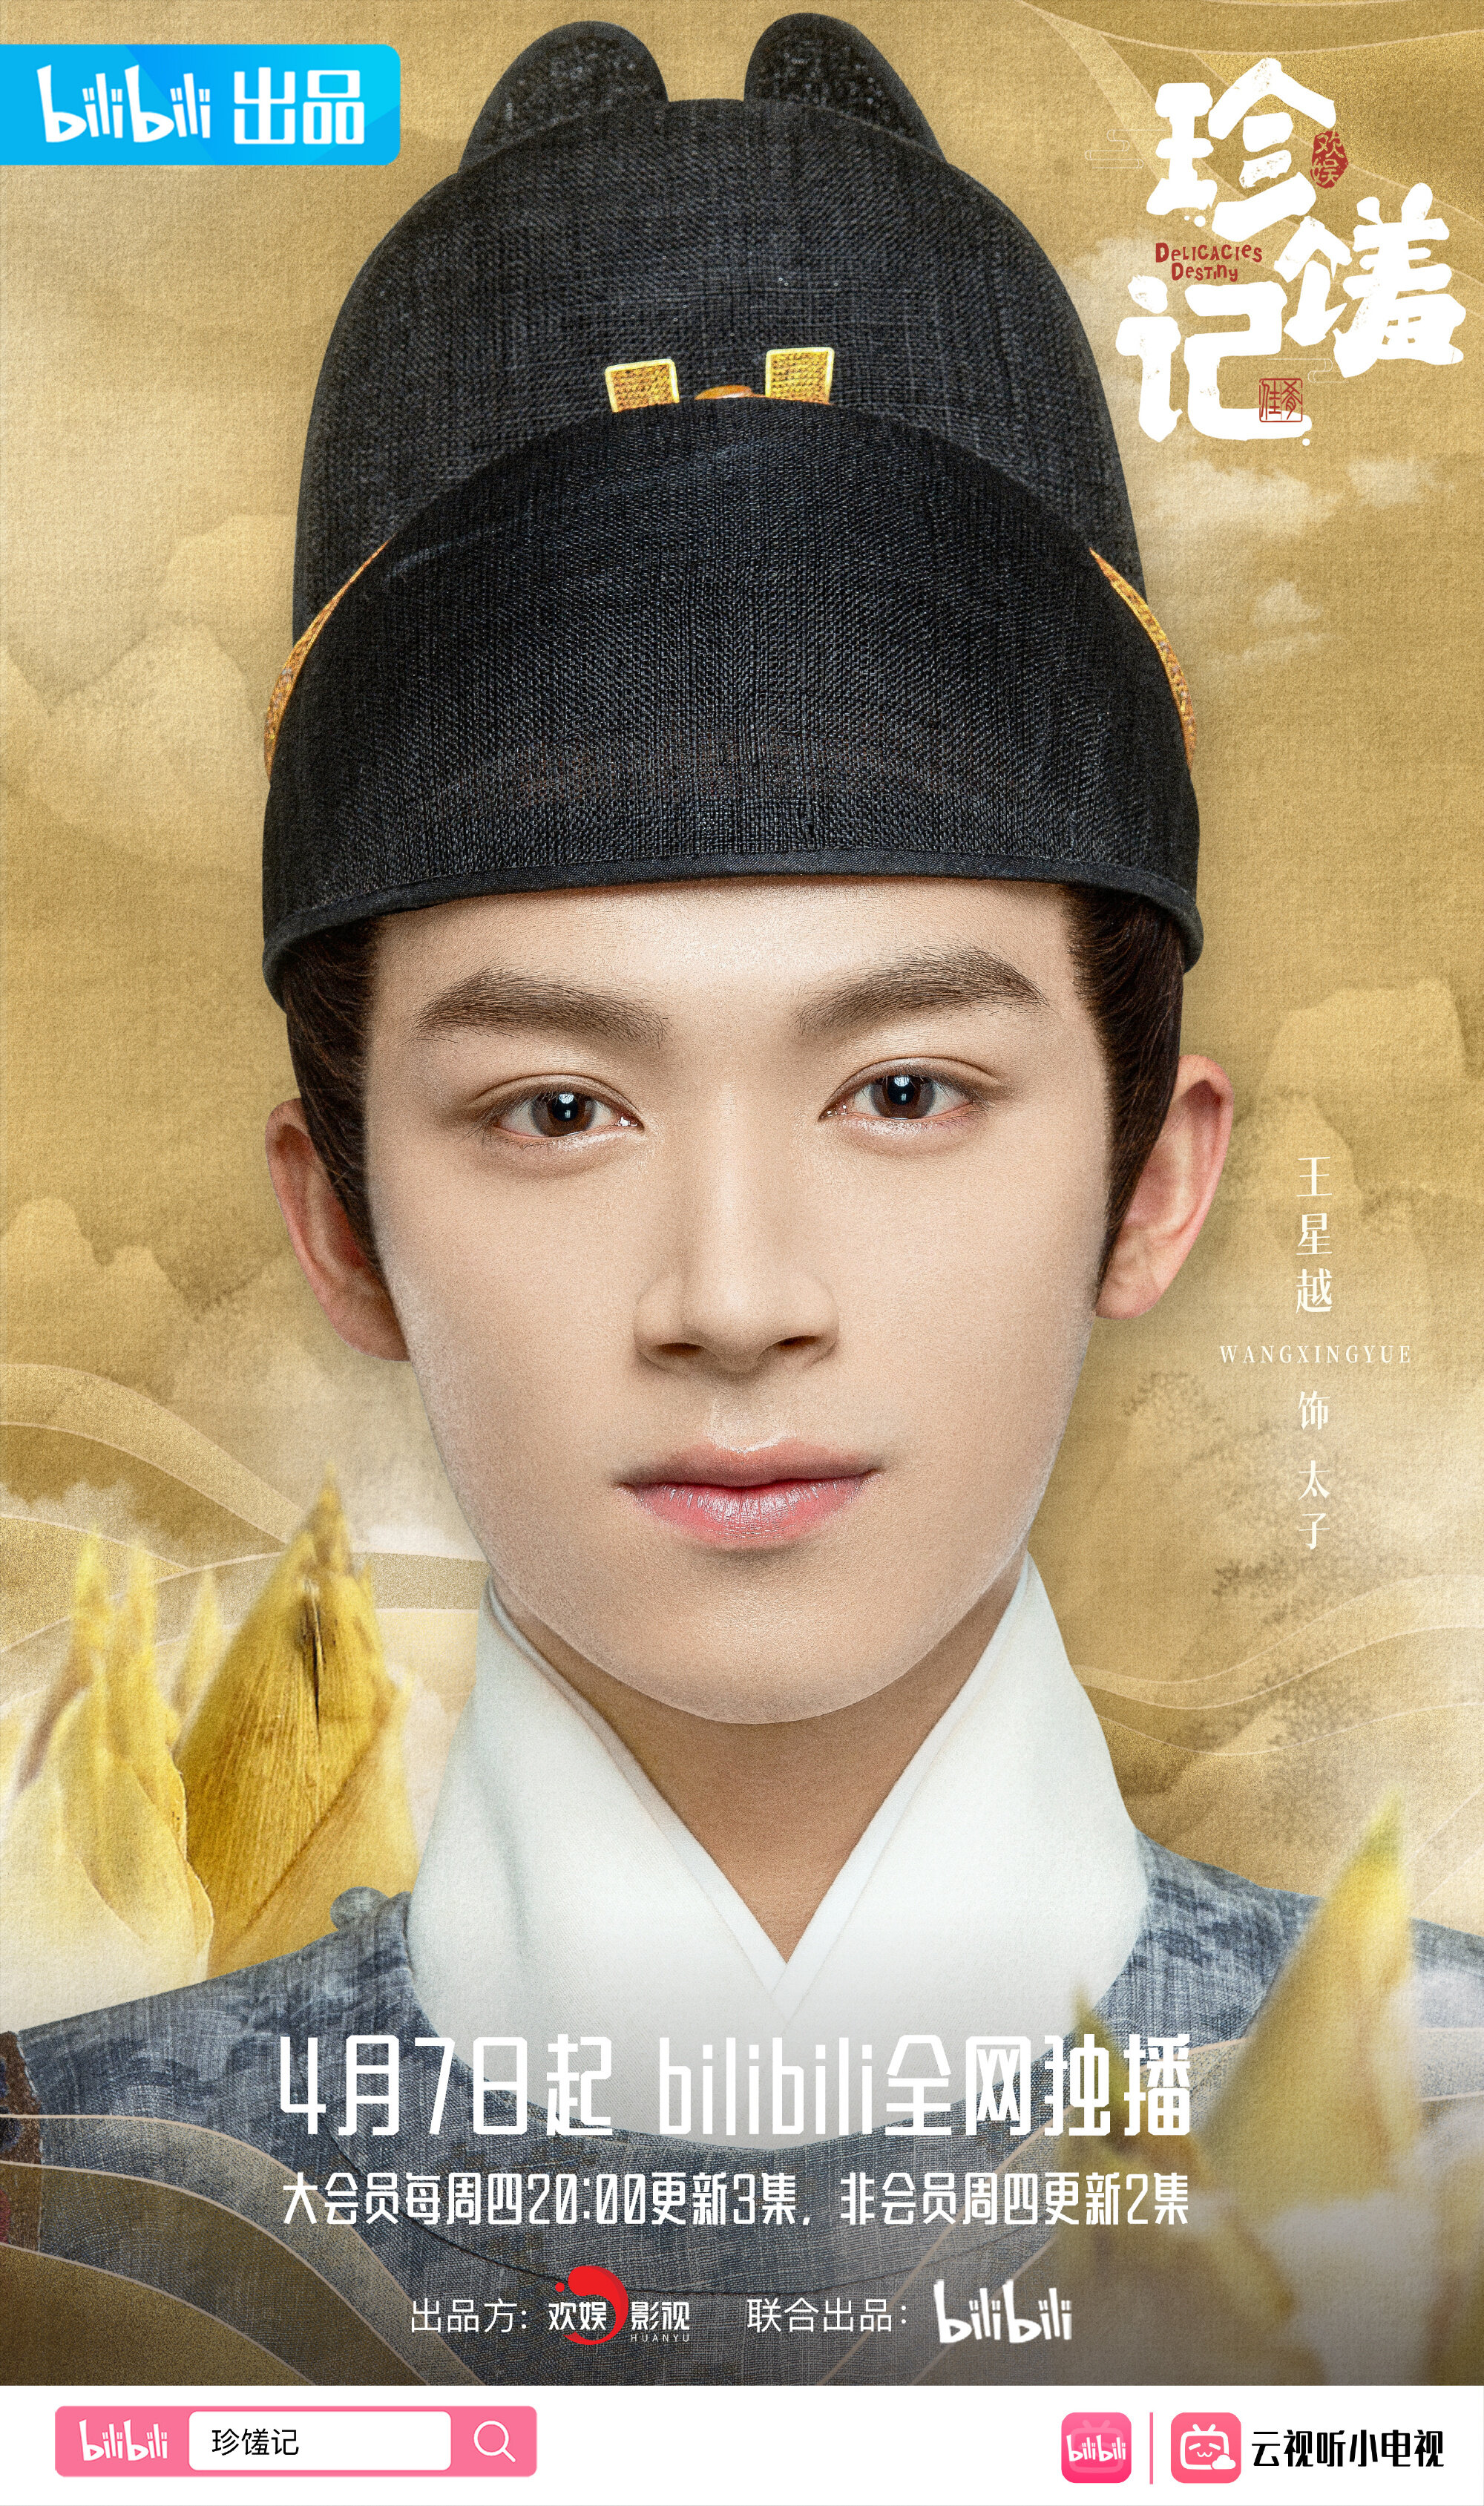 Prince Zhu Shou Kui